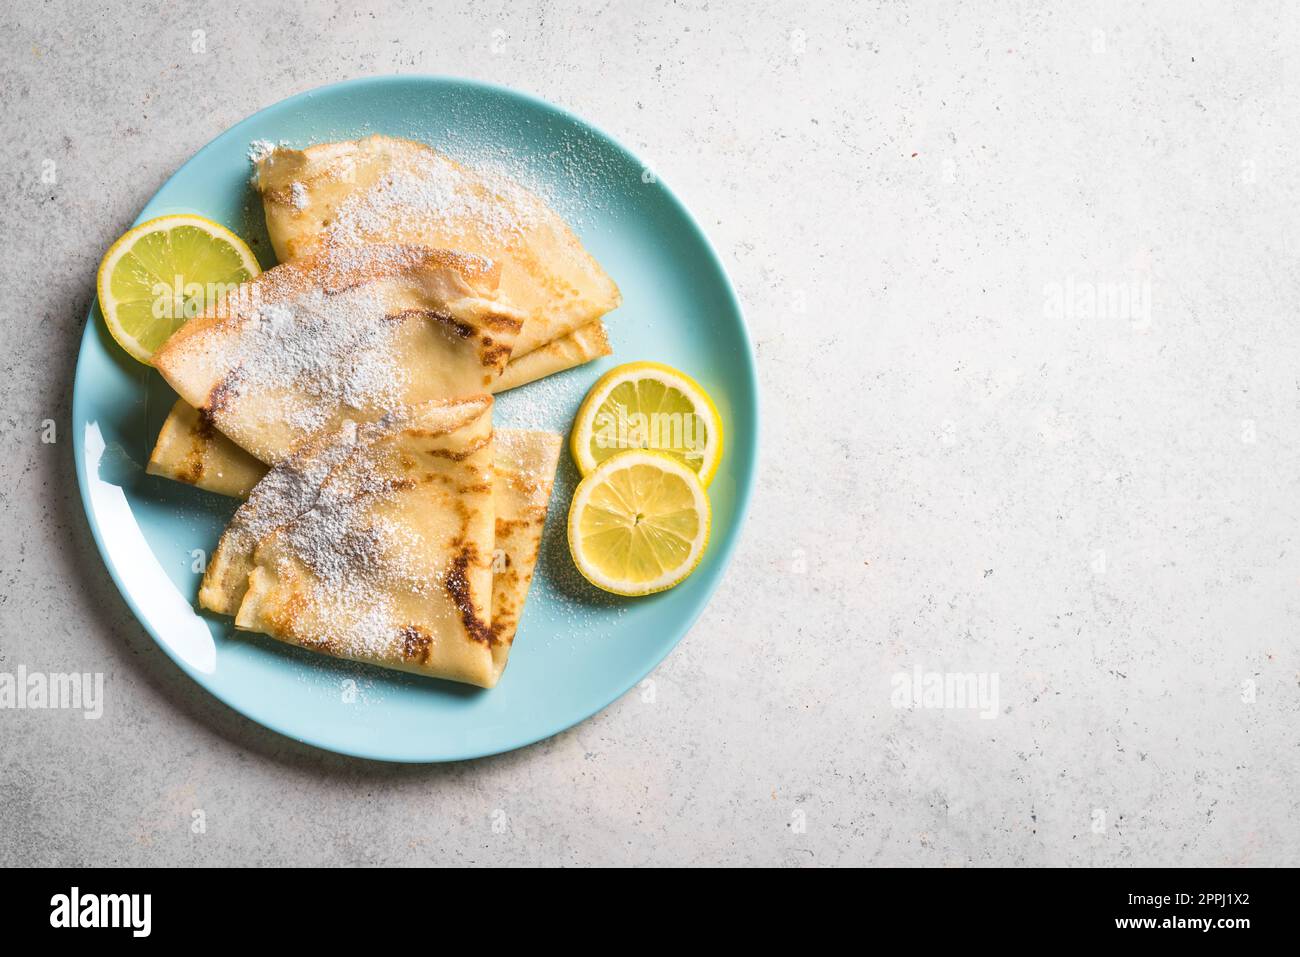 Crêpes aux agrumes Suzette avec citron sur fond blanc, espace de copie. Crêpes faites maison pour le petit-déjeuner ou le dessert. Banque D'Images